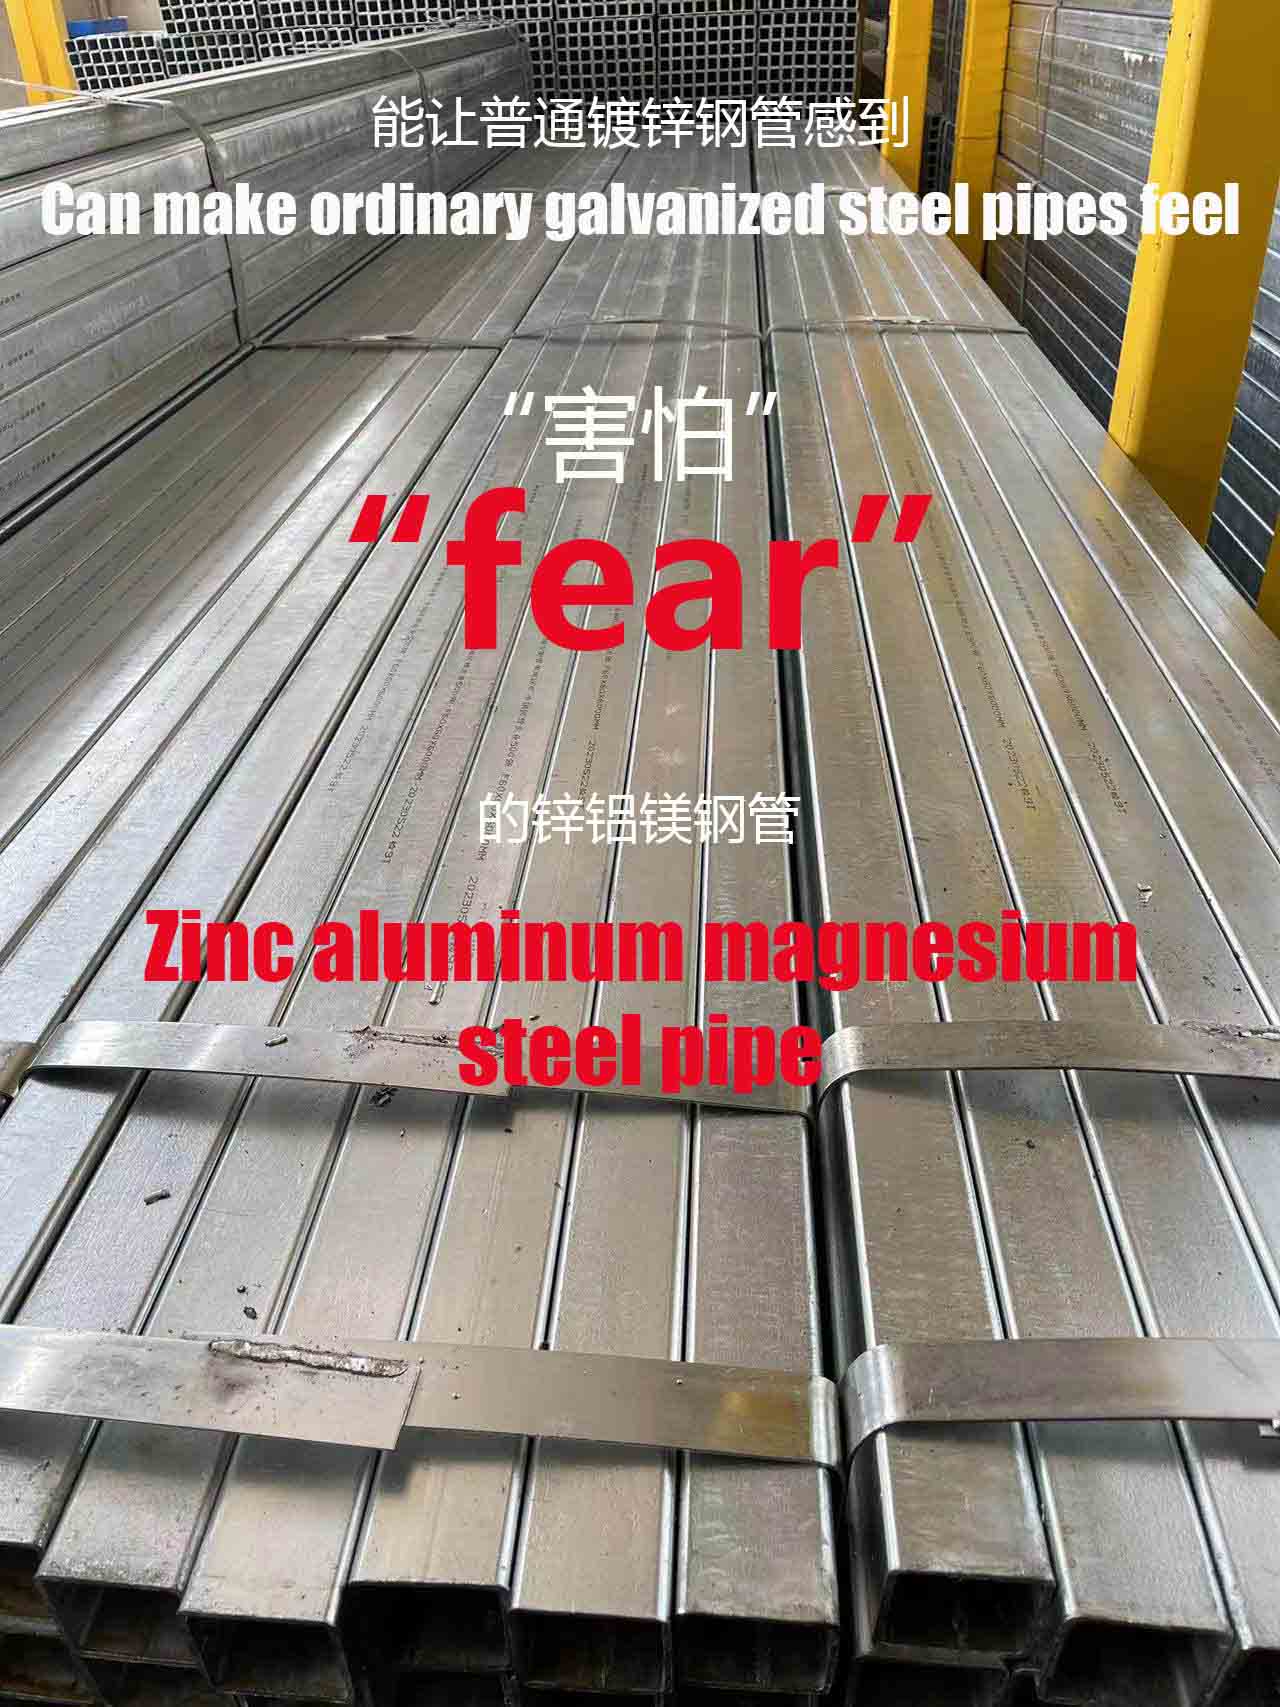 Pipa baja seng aluminium magnesium yang dapat membuat pipa baja galvanis biasa “menakutkan”